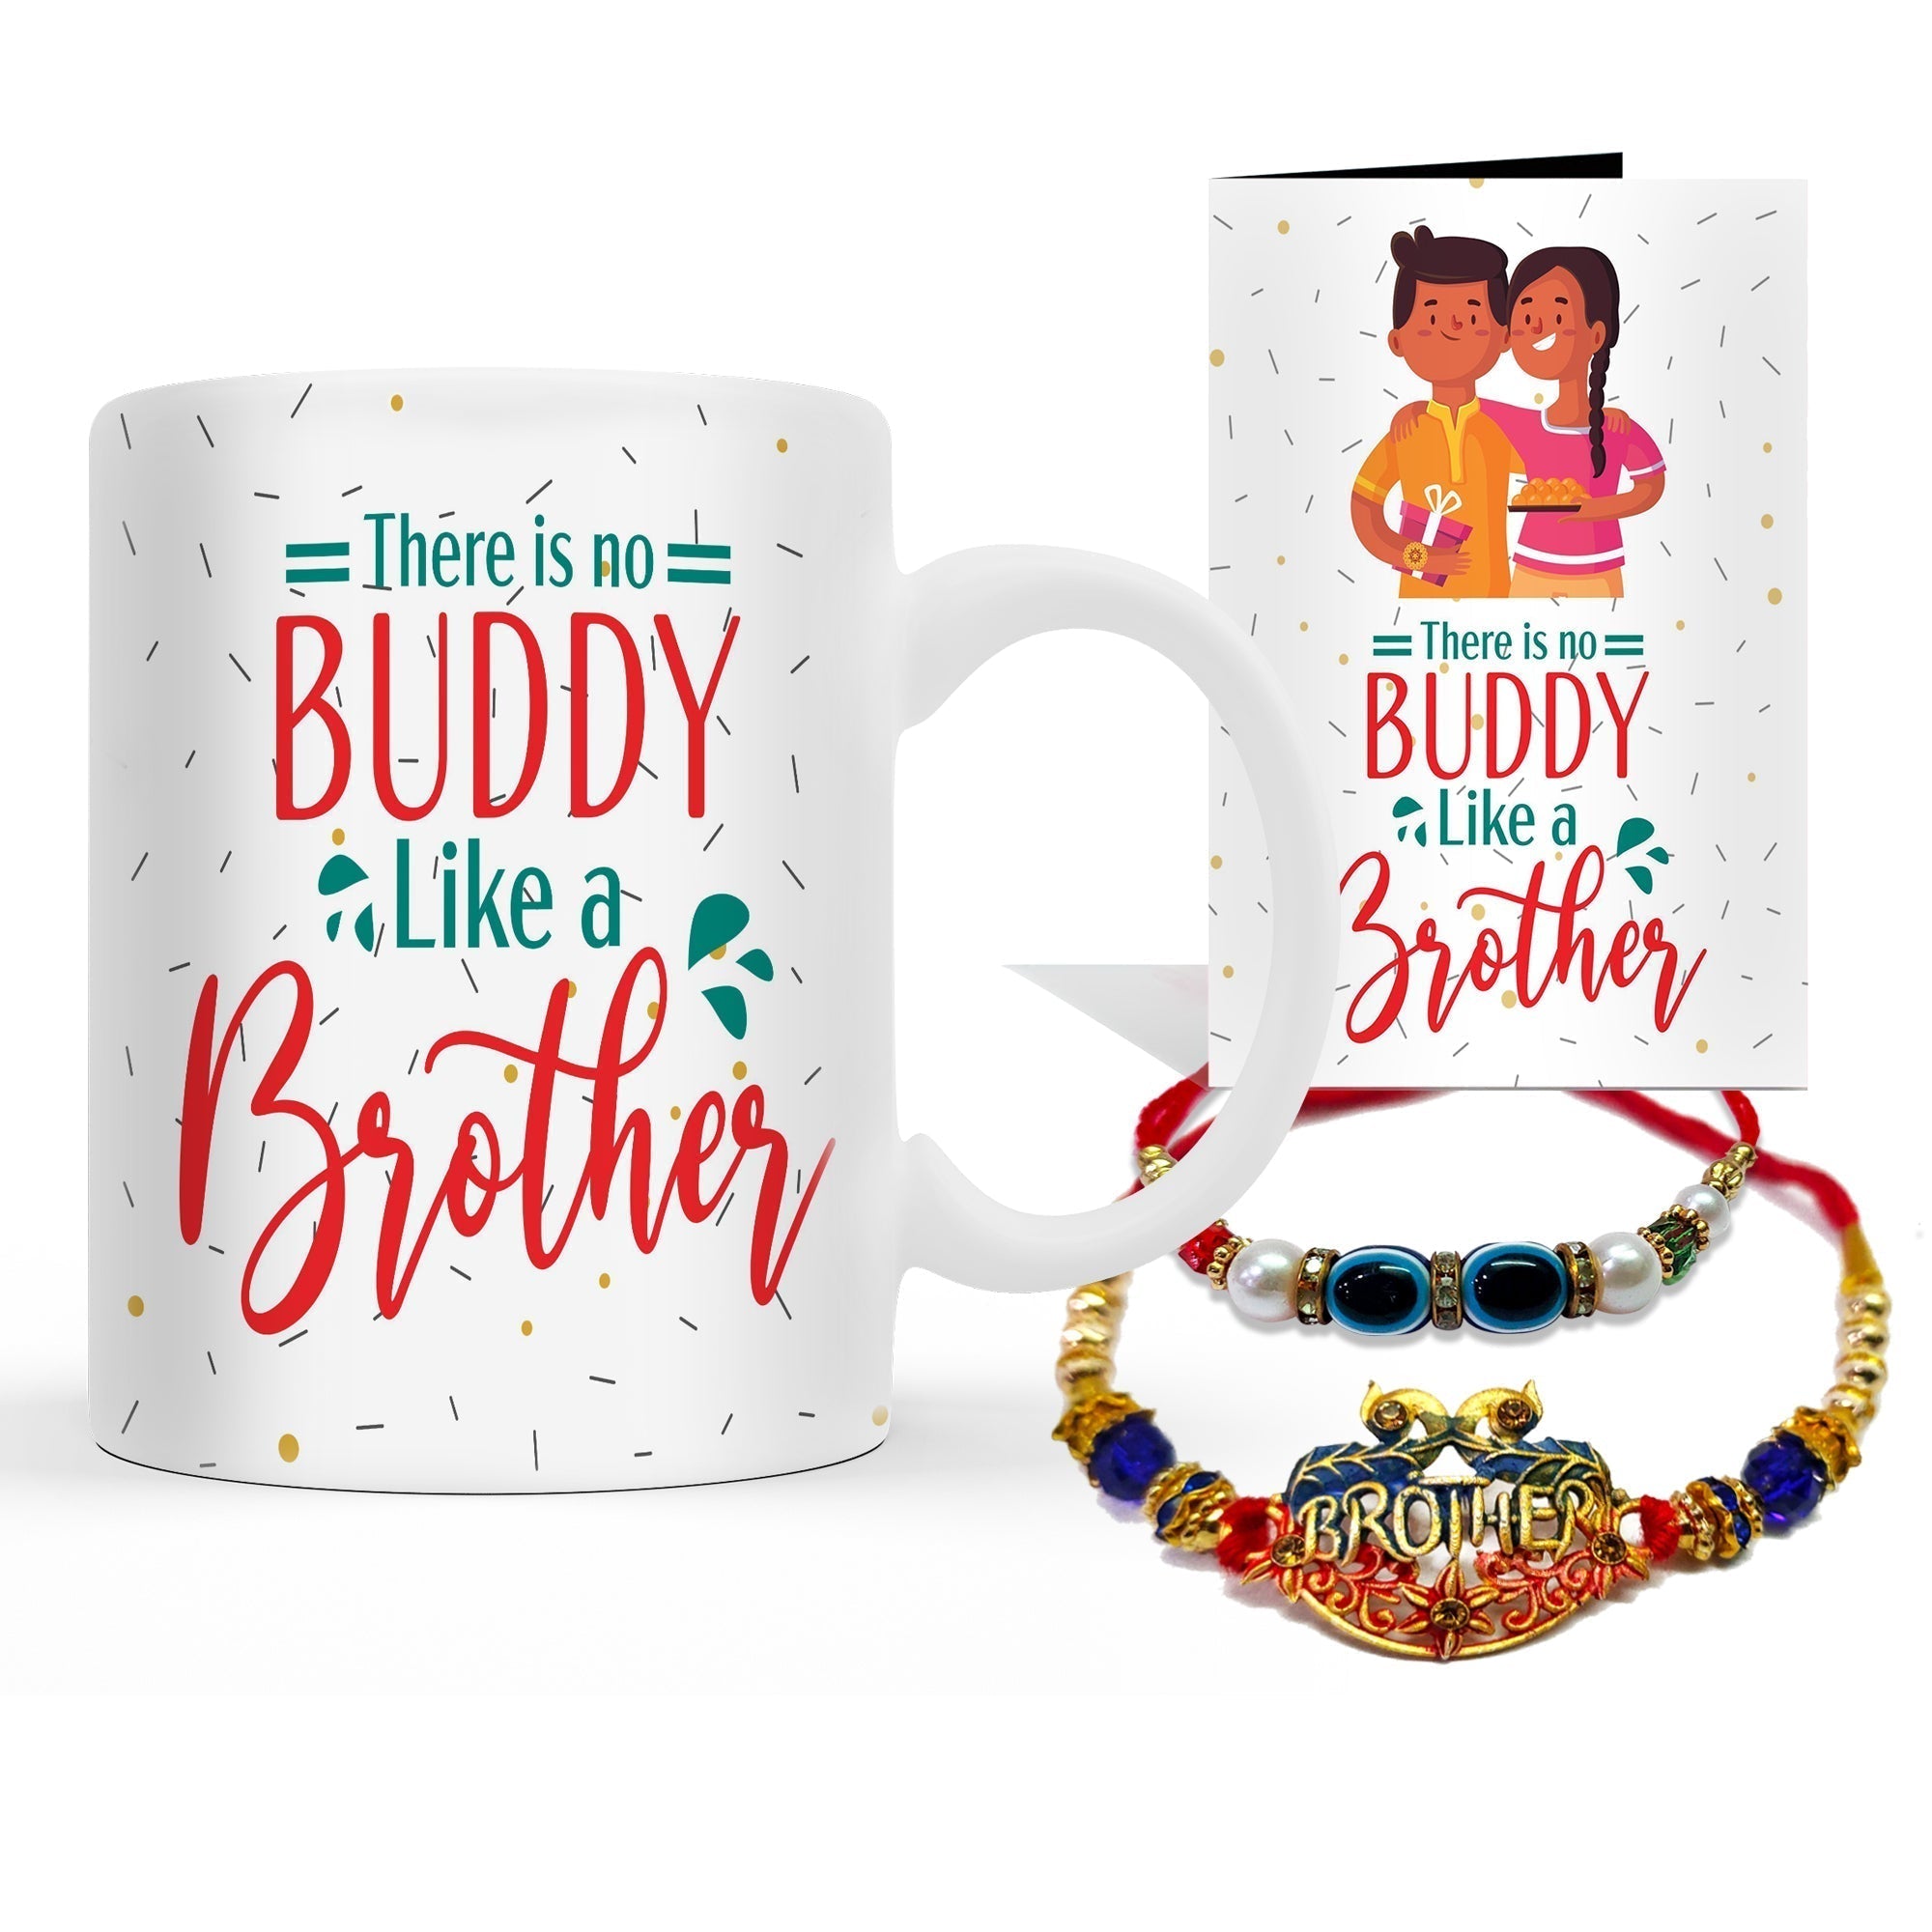 Buddy Like Brother Rakhi with Mug Gift Combo Set